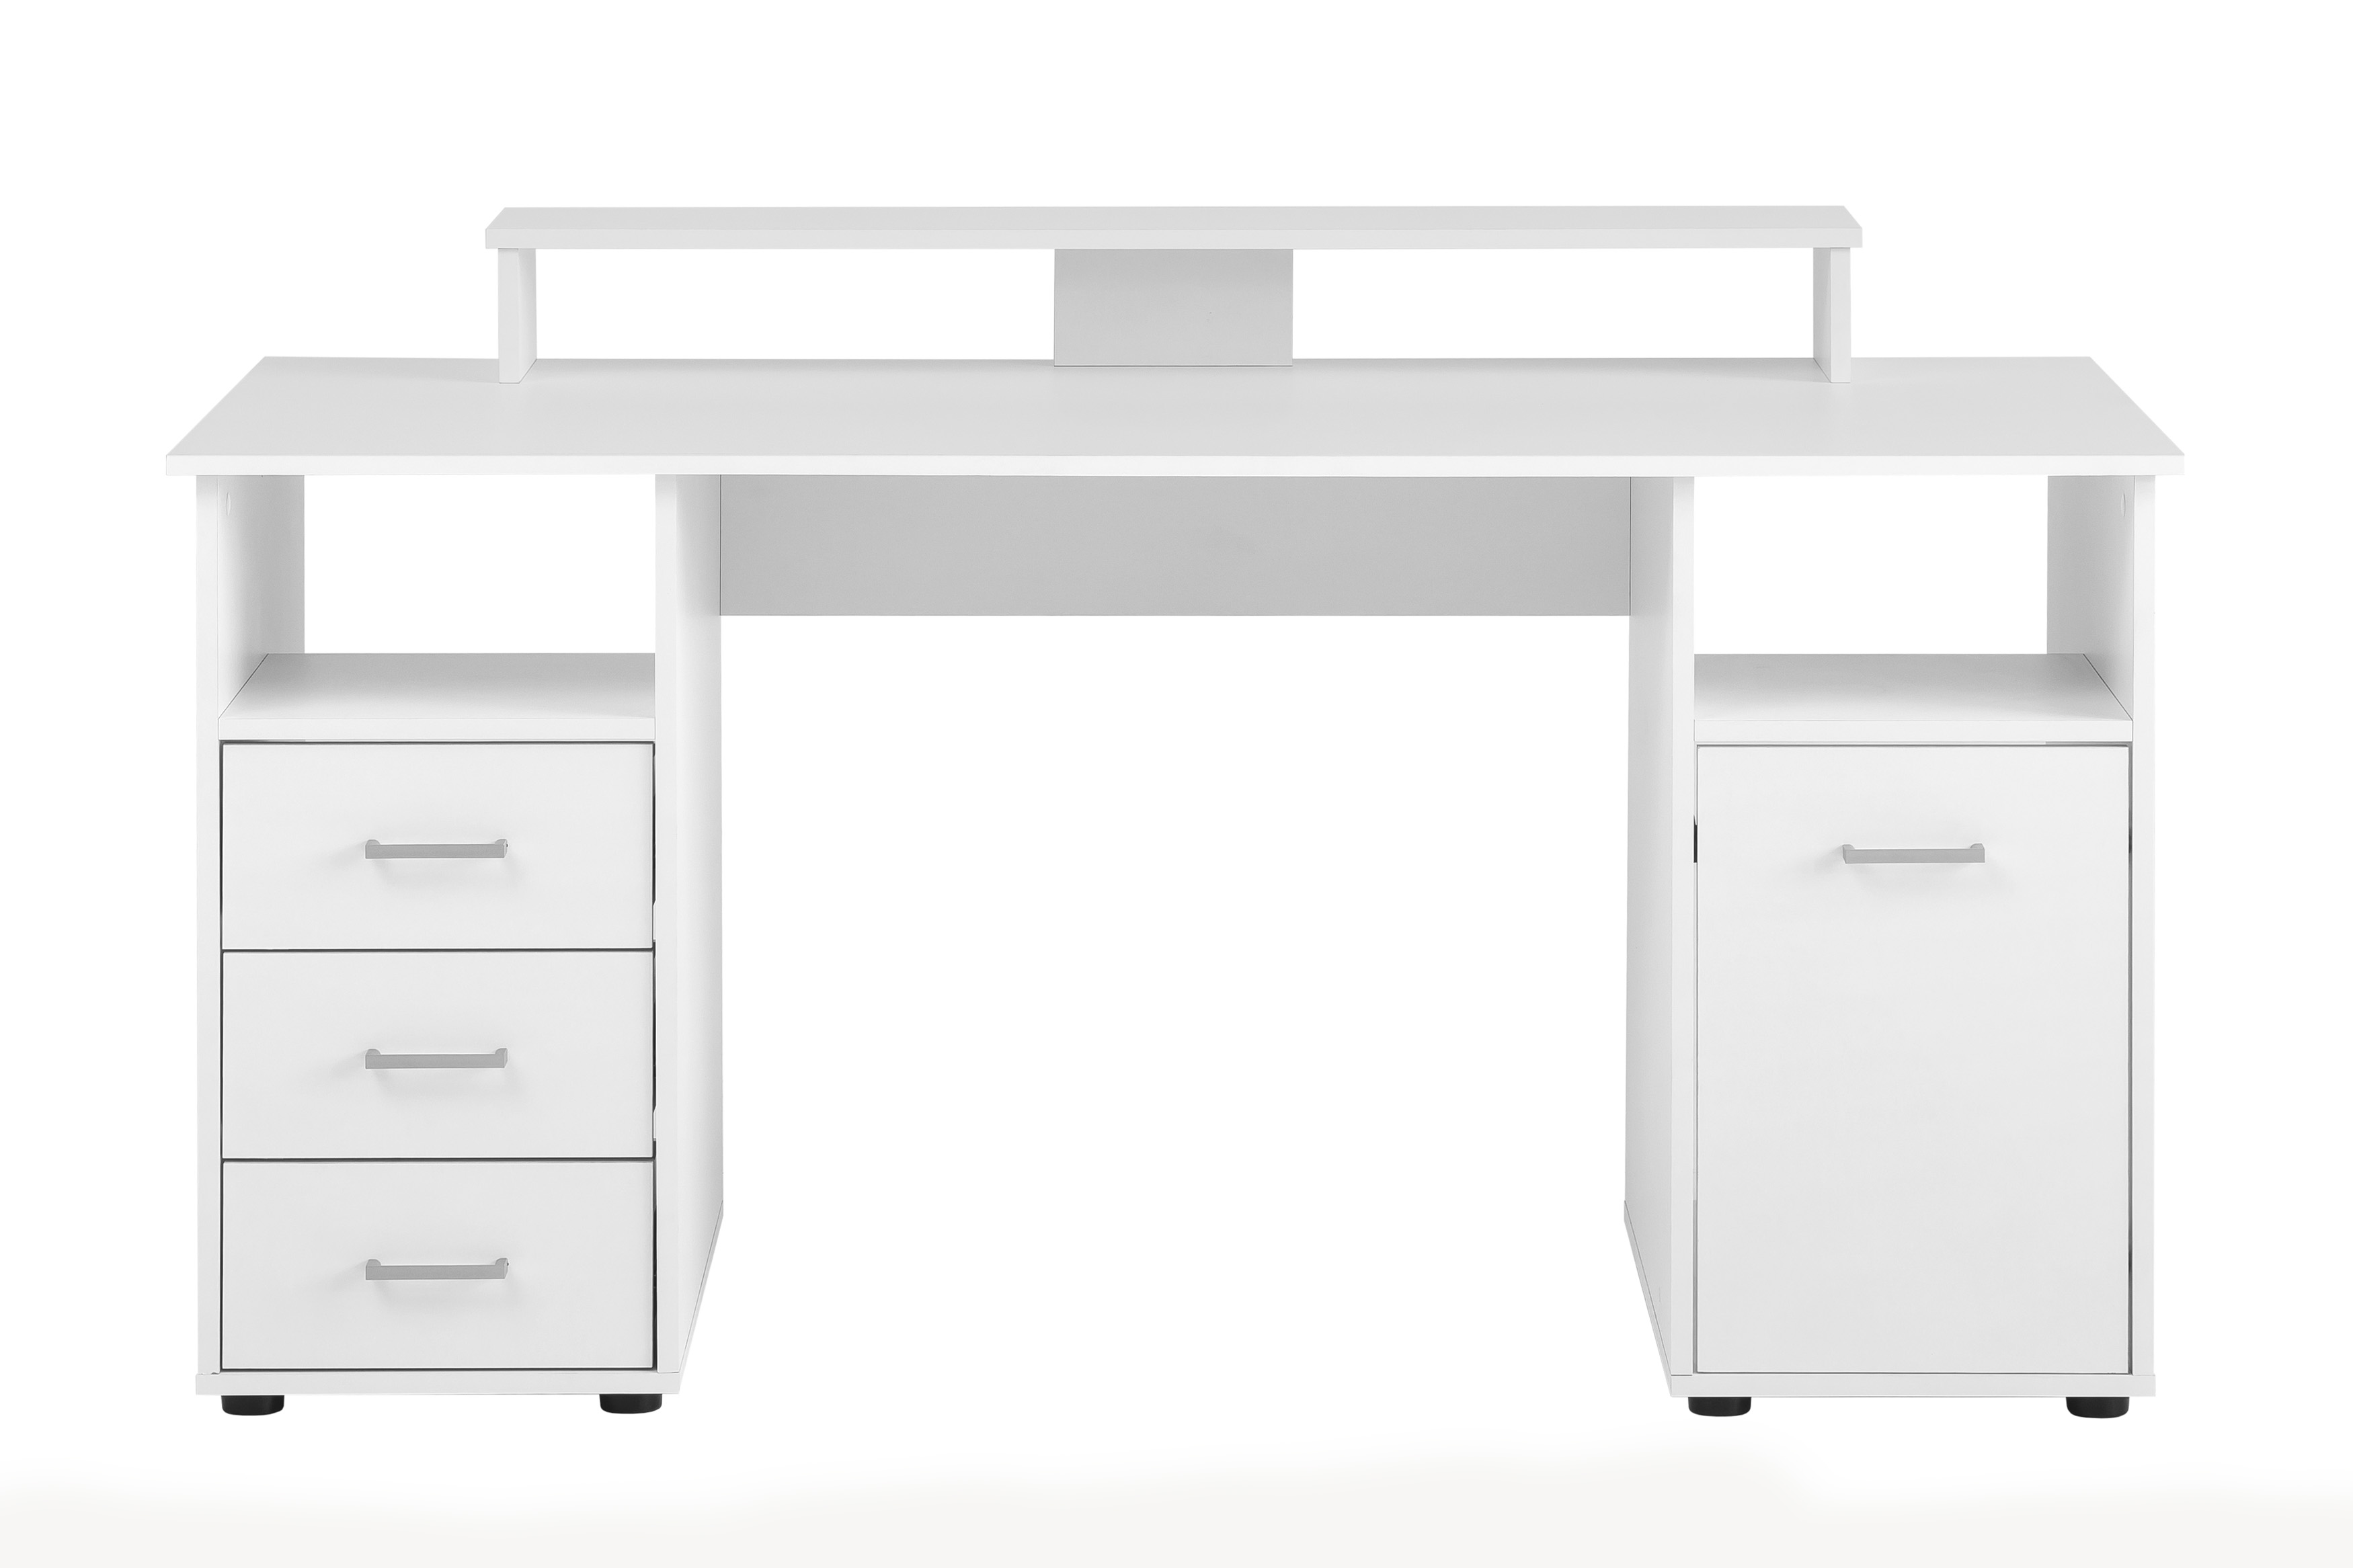 Möbelpartner Schreibtisch Fox | Large | HxBxT 86x150x70cm | 3 Schubladen, 2 offene Fächer, 1 Fach mit Flügeltür & Monitorständer | Weiß